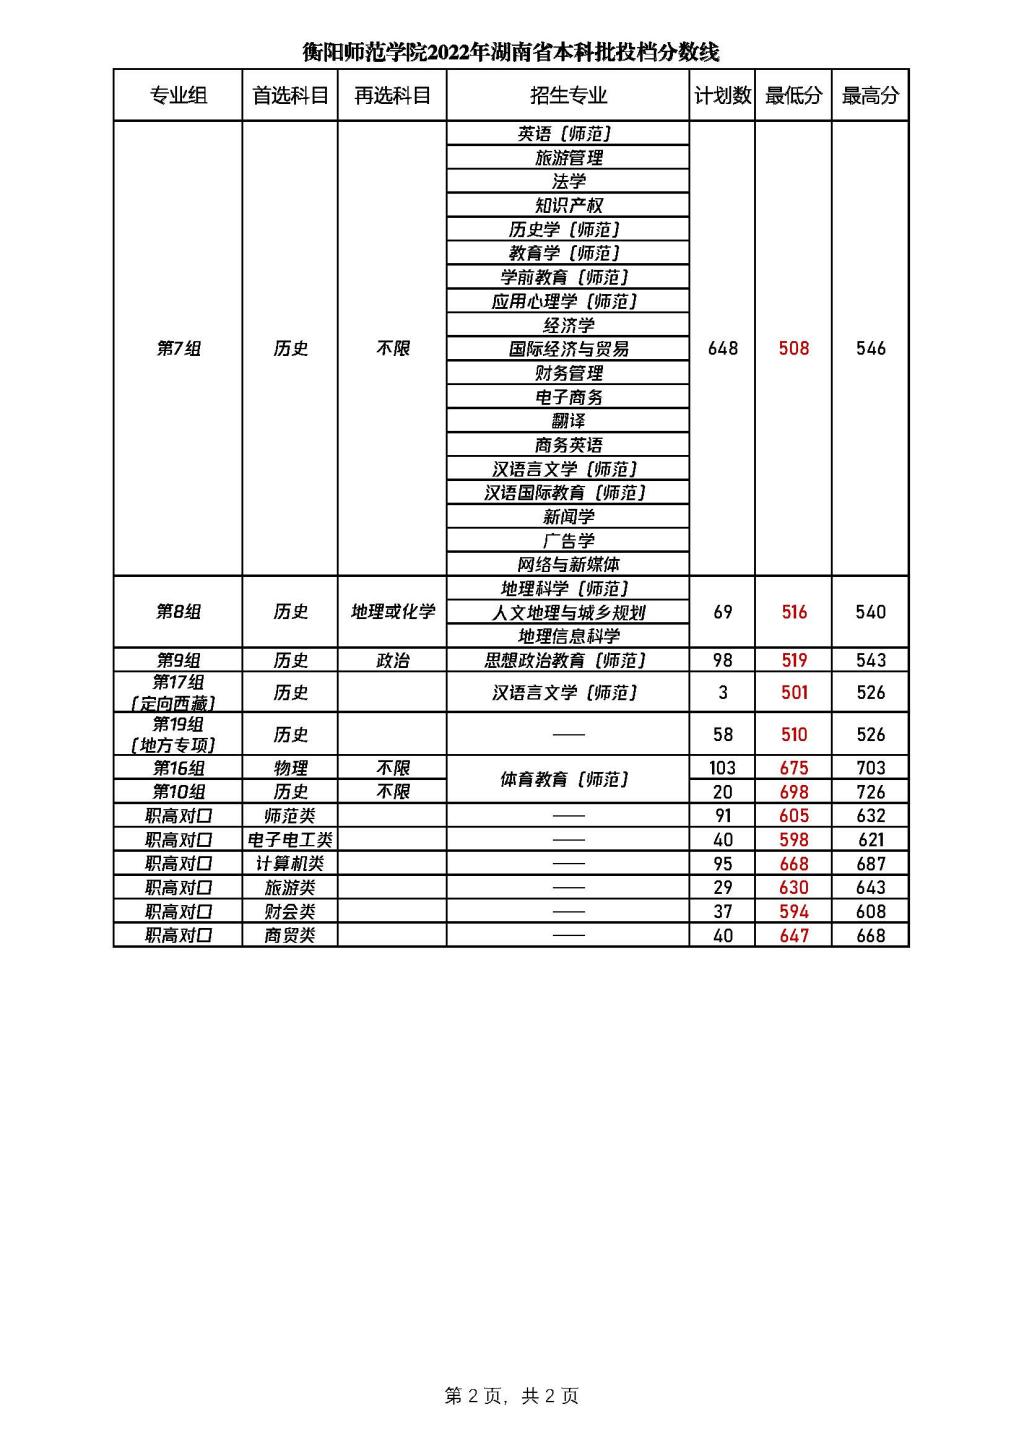 衡阳师范学院2022年湖南省高考最低分录取情况表